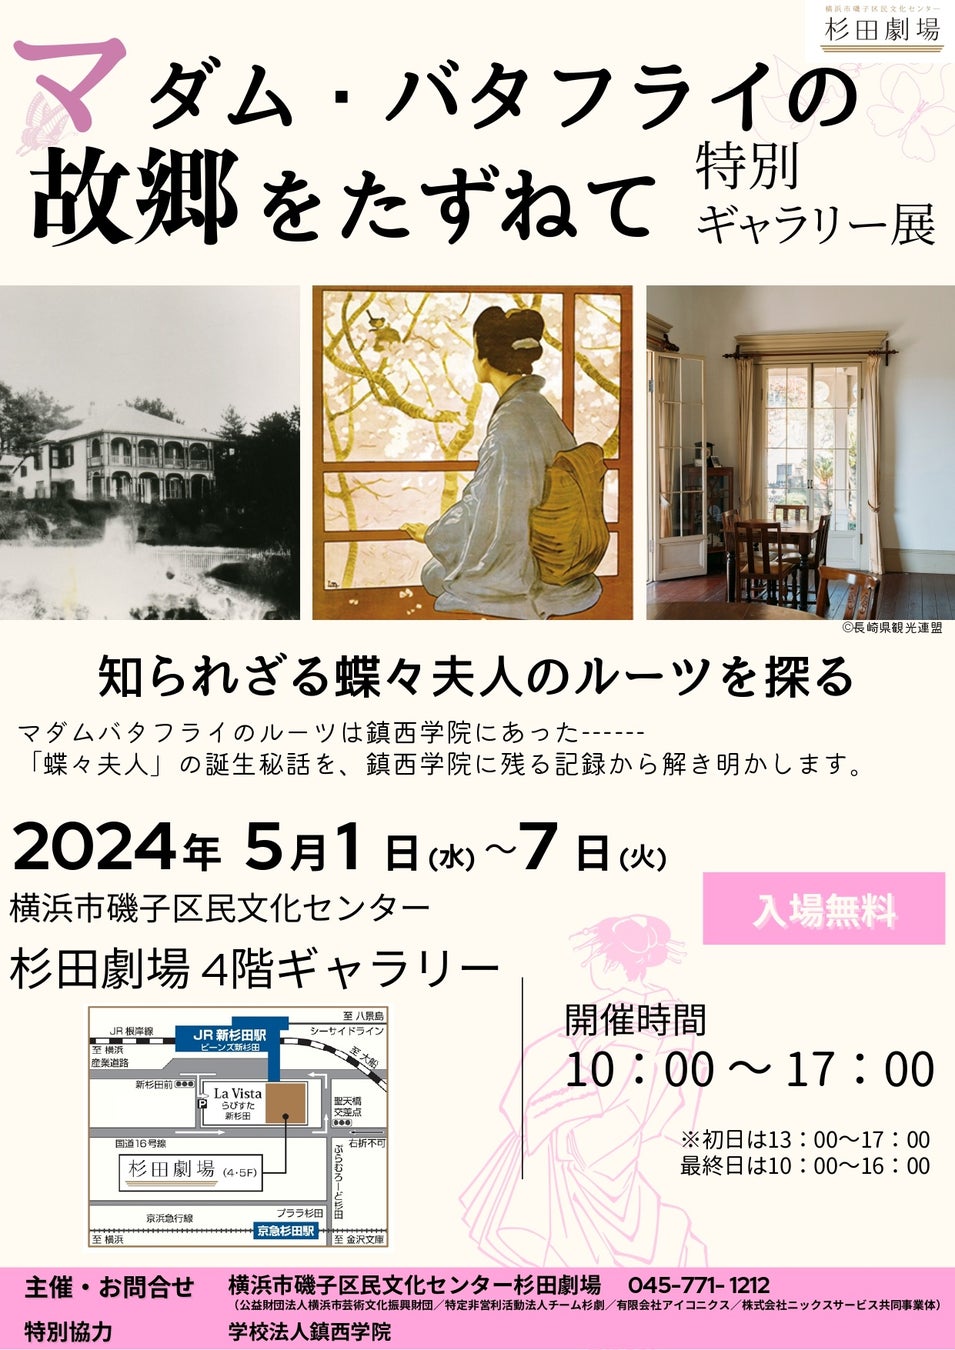 【杉田劇場】マダム・バタフライの故郷をたずねて 特別ギャラリー展　開催